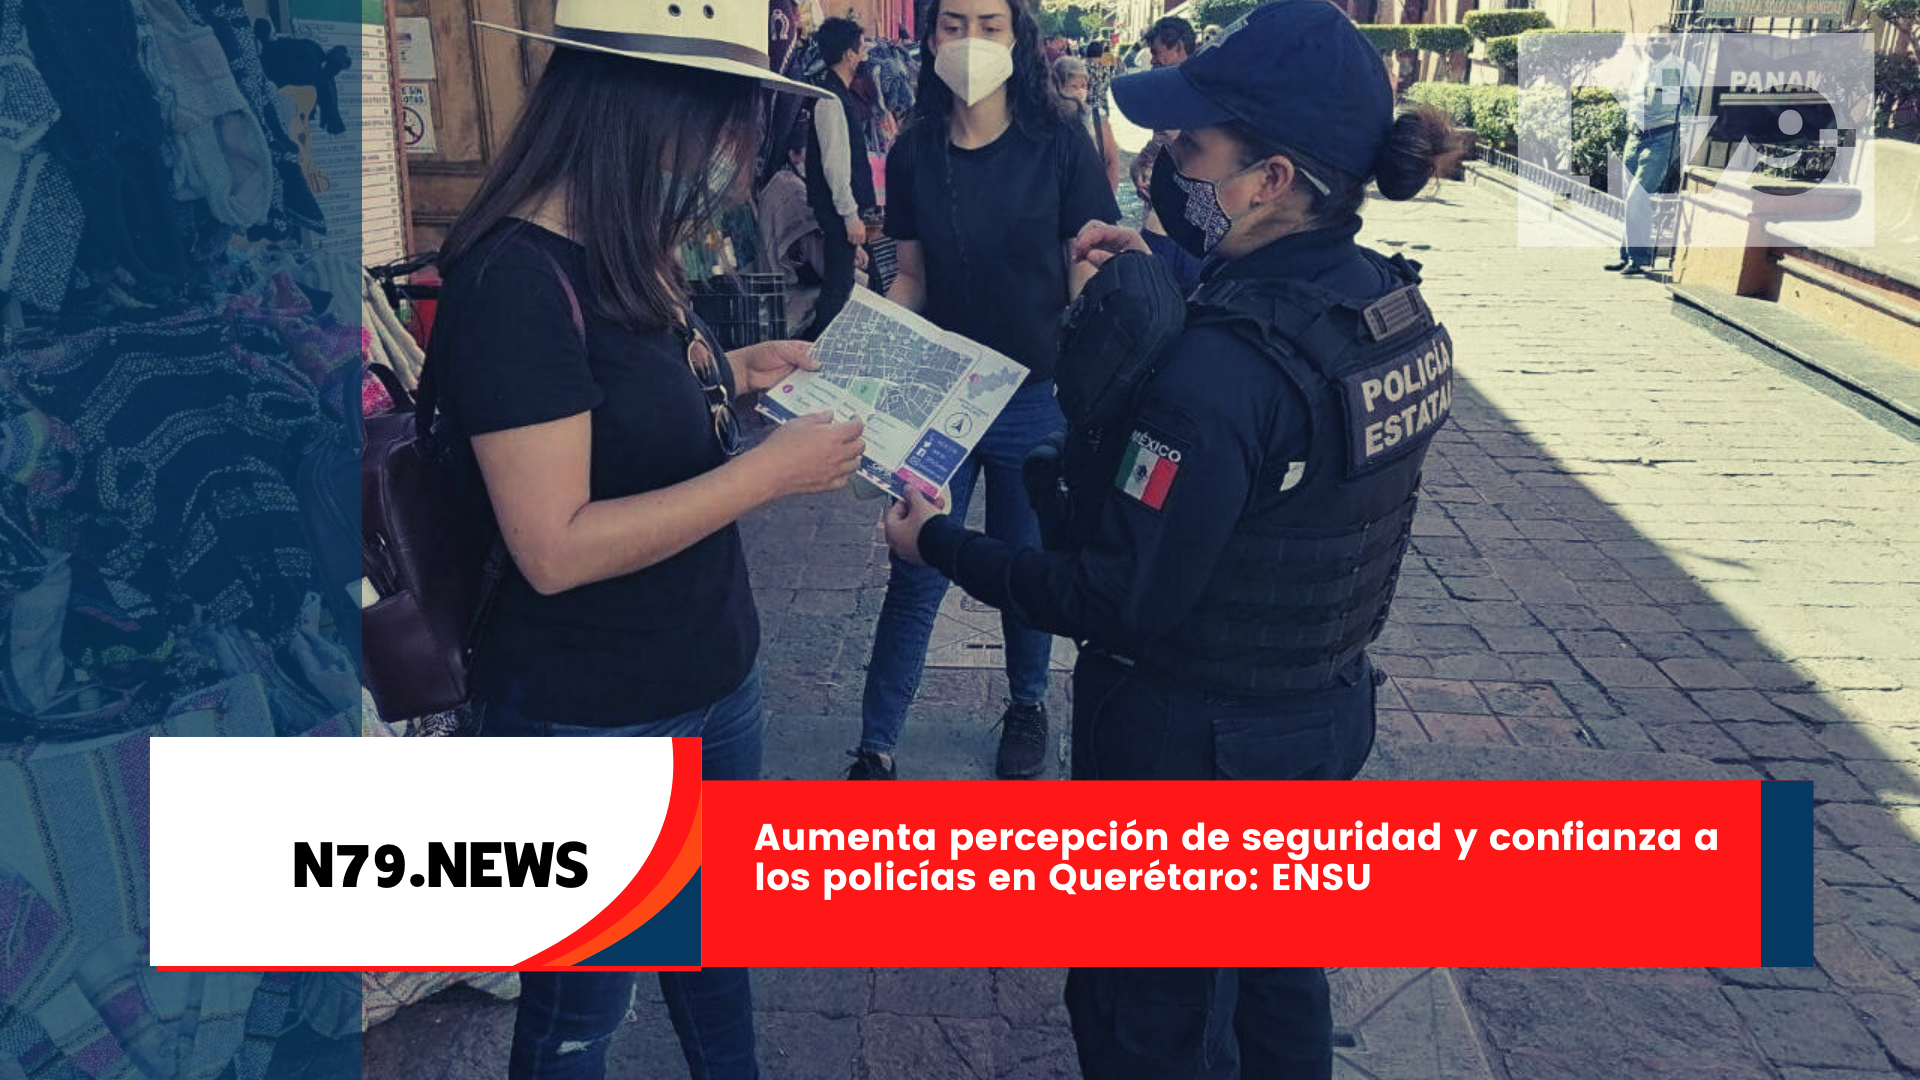 Aumenta percepción de seguridad y confianza a los policías en Querétaro ENSU